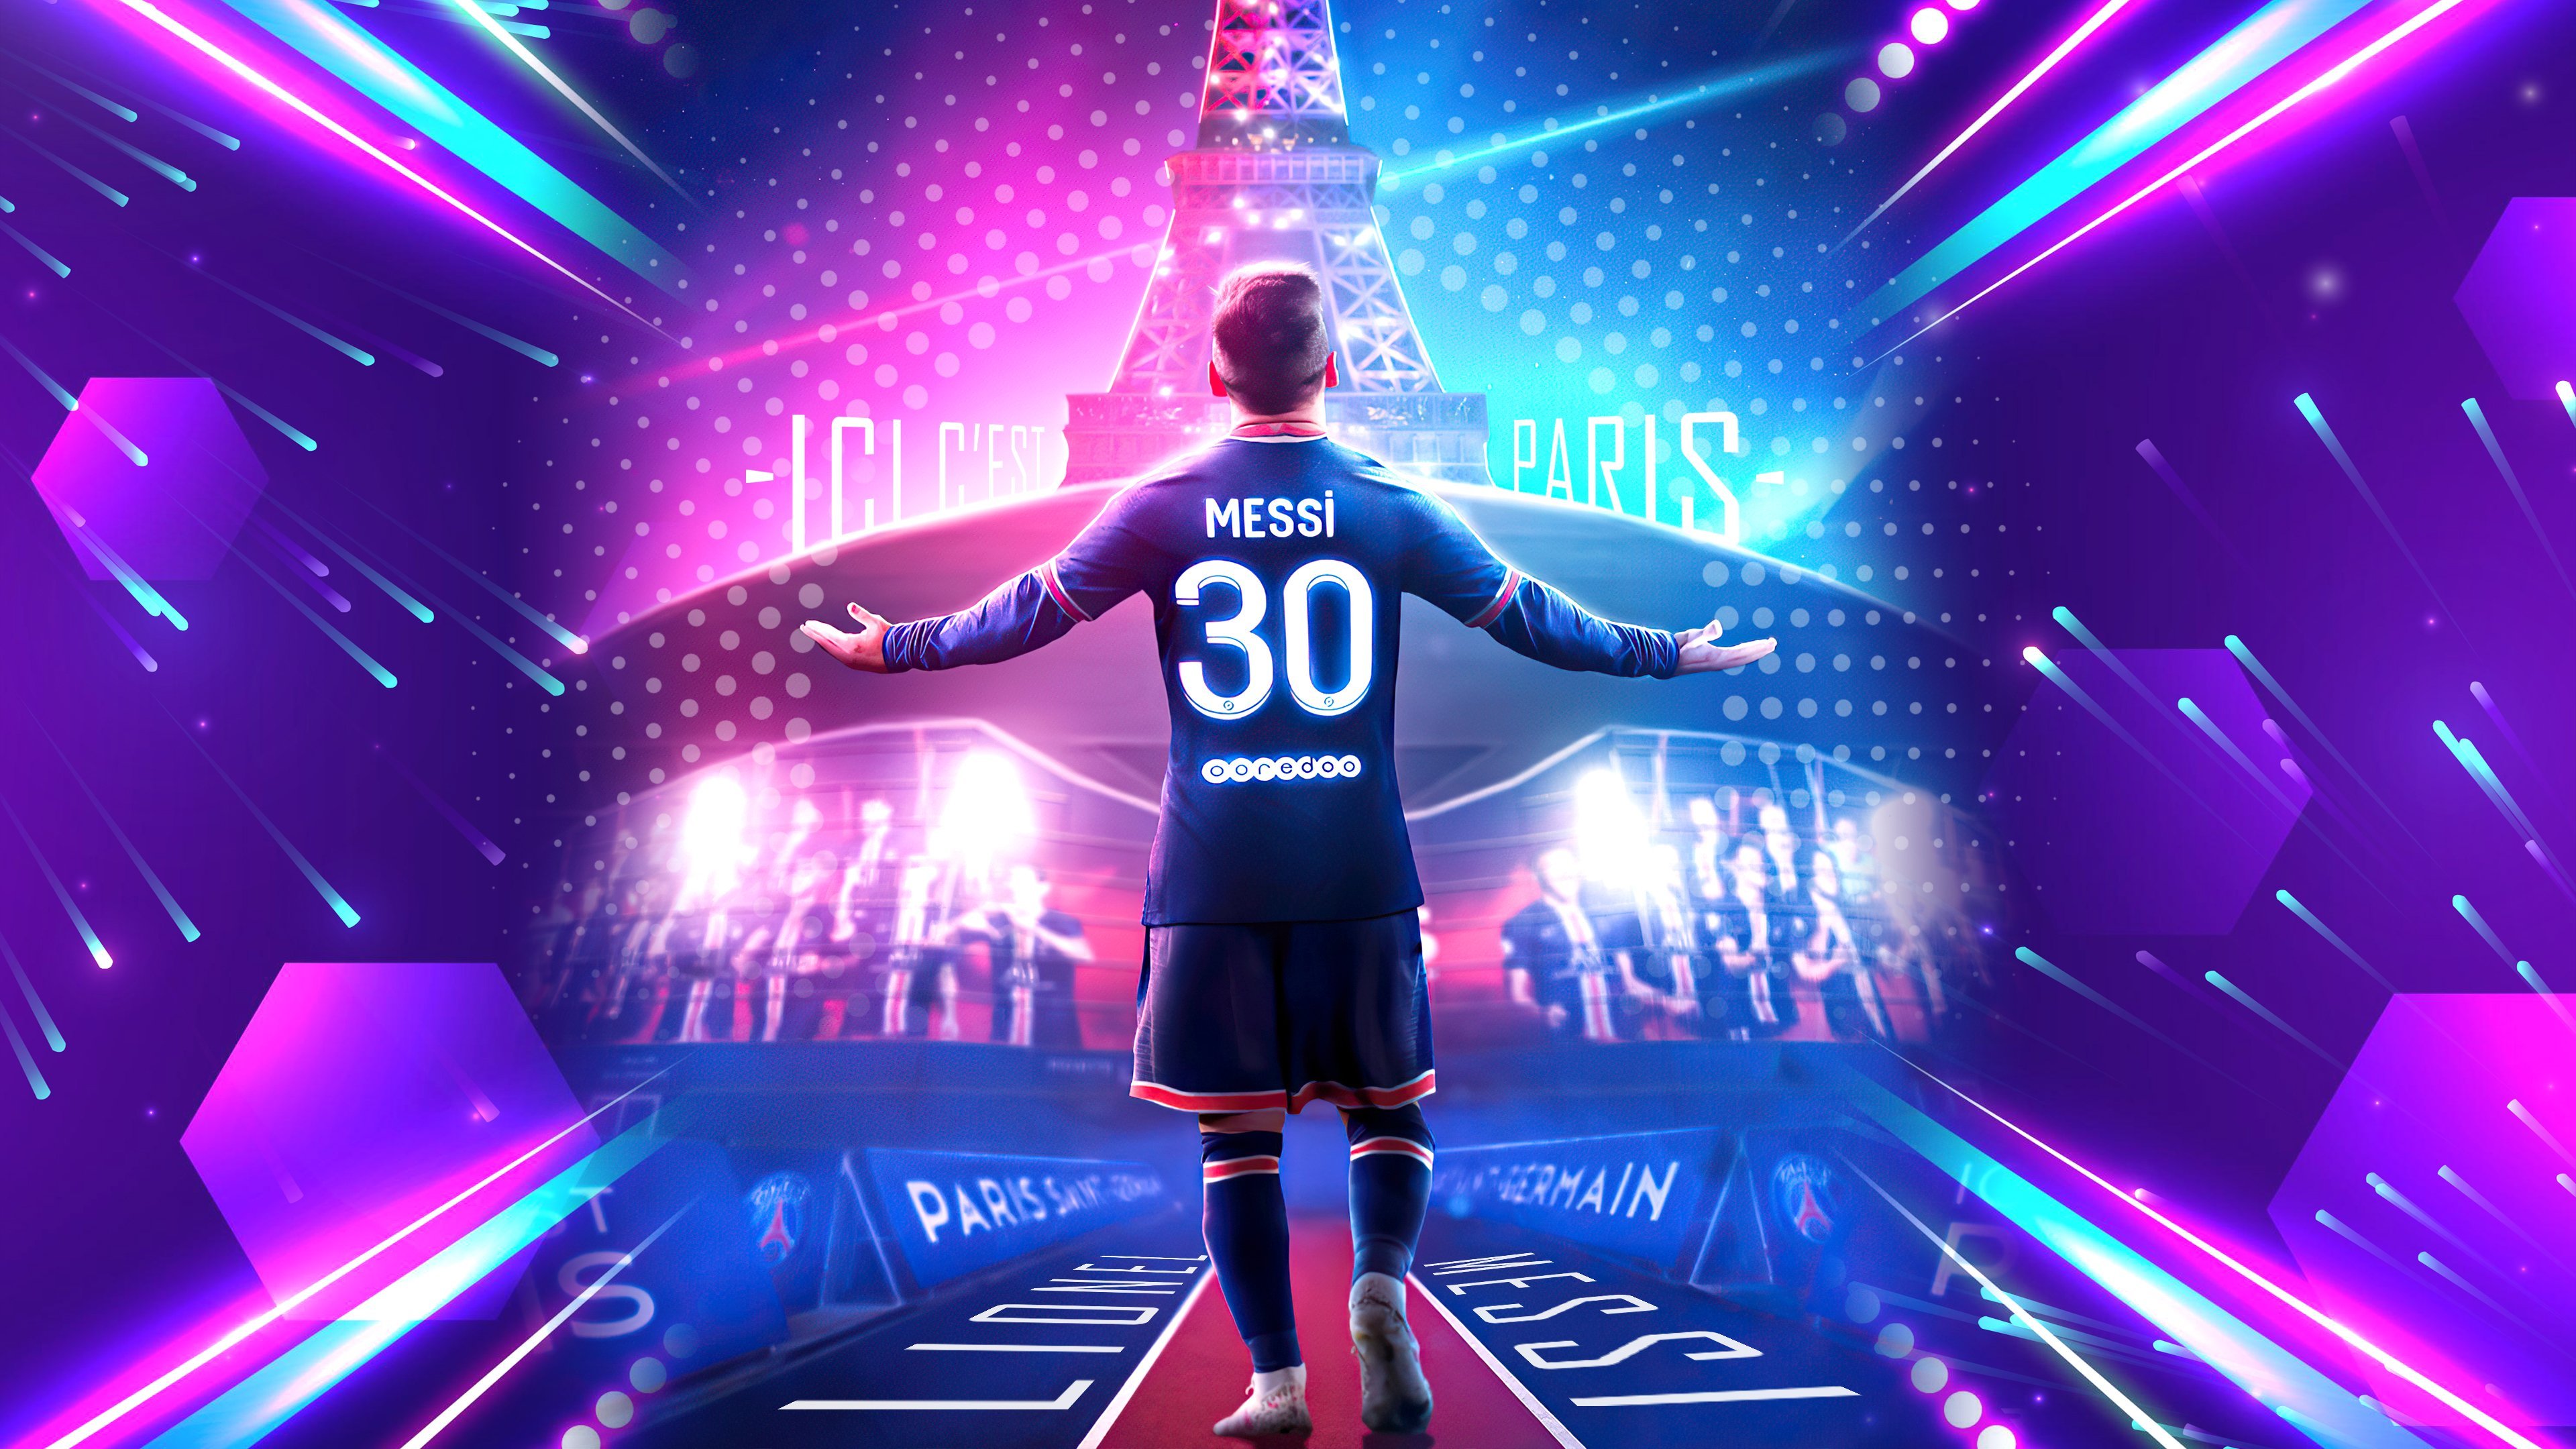 Siêu nét, chất lượng thỏa mãn mọi yêu cầu - hình nền Messi PSG 4K chắc chắn sẽ là lựa chọn hoàn hảo cho những người yêu thích Messi và bóng đá. Miễn phí và dễ dàng tải về, hãy thưởng thức ngay.